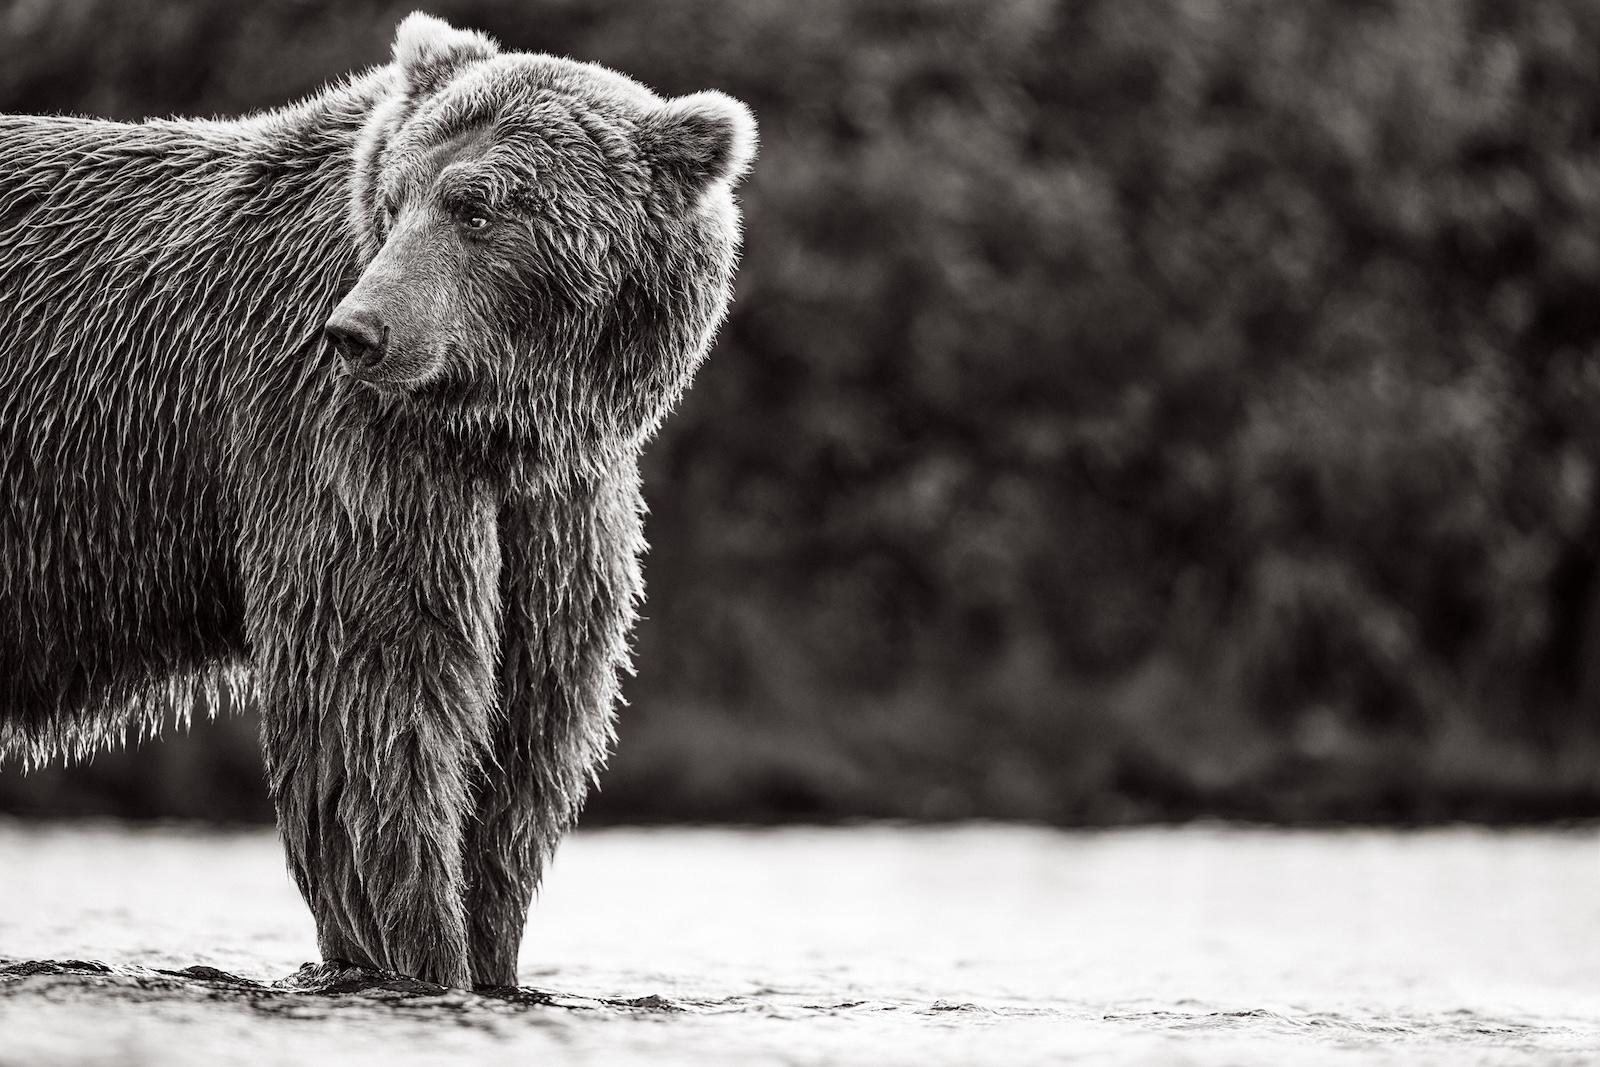 Black and White Photograph Drew Doggett - Portrait d'un ours brun regardant par-dessus son épaule au bord du ruisseau